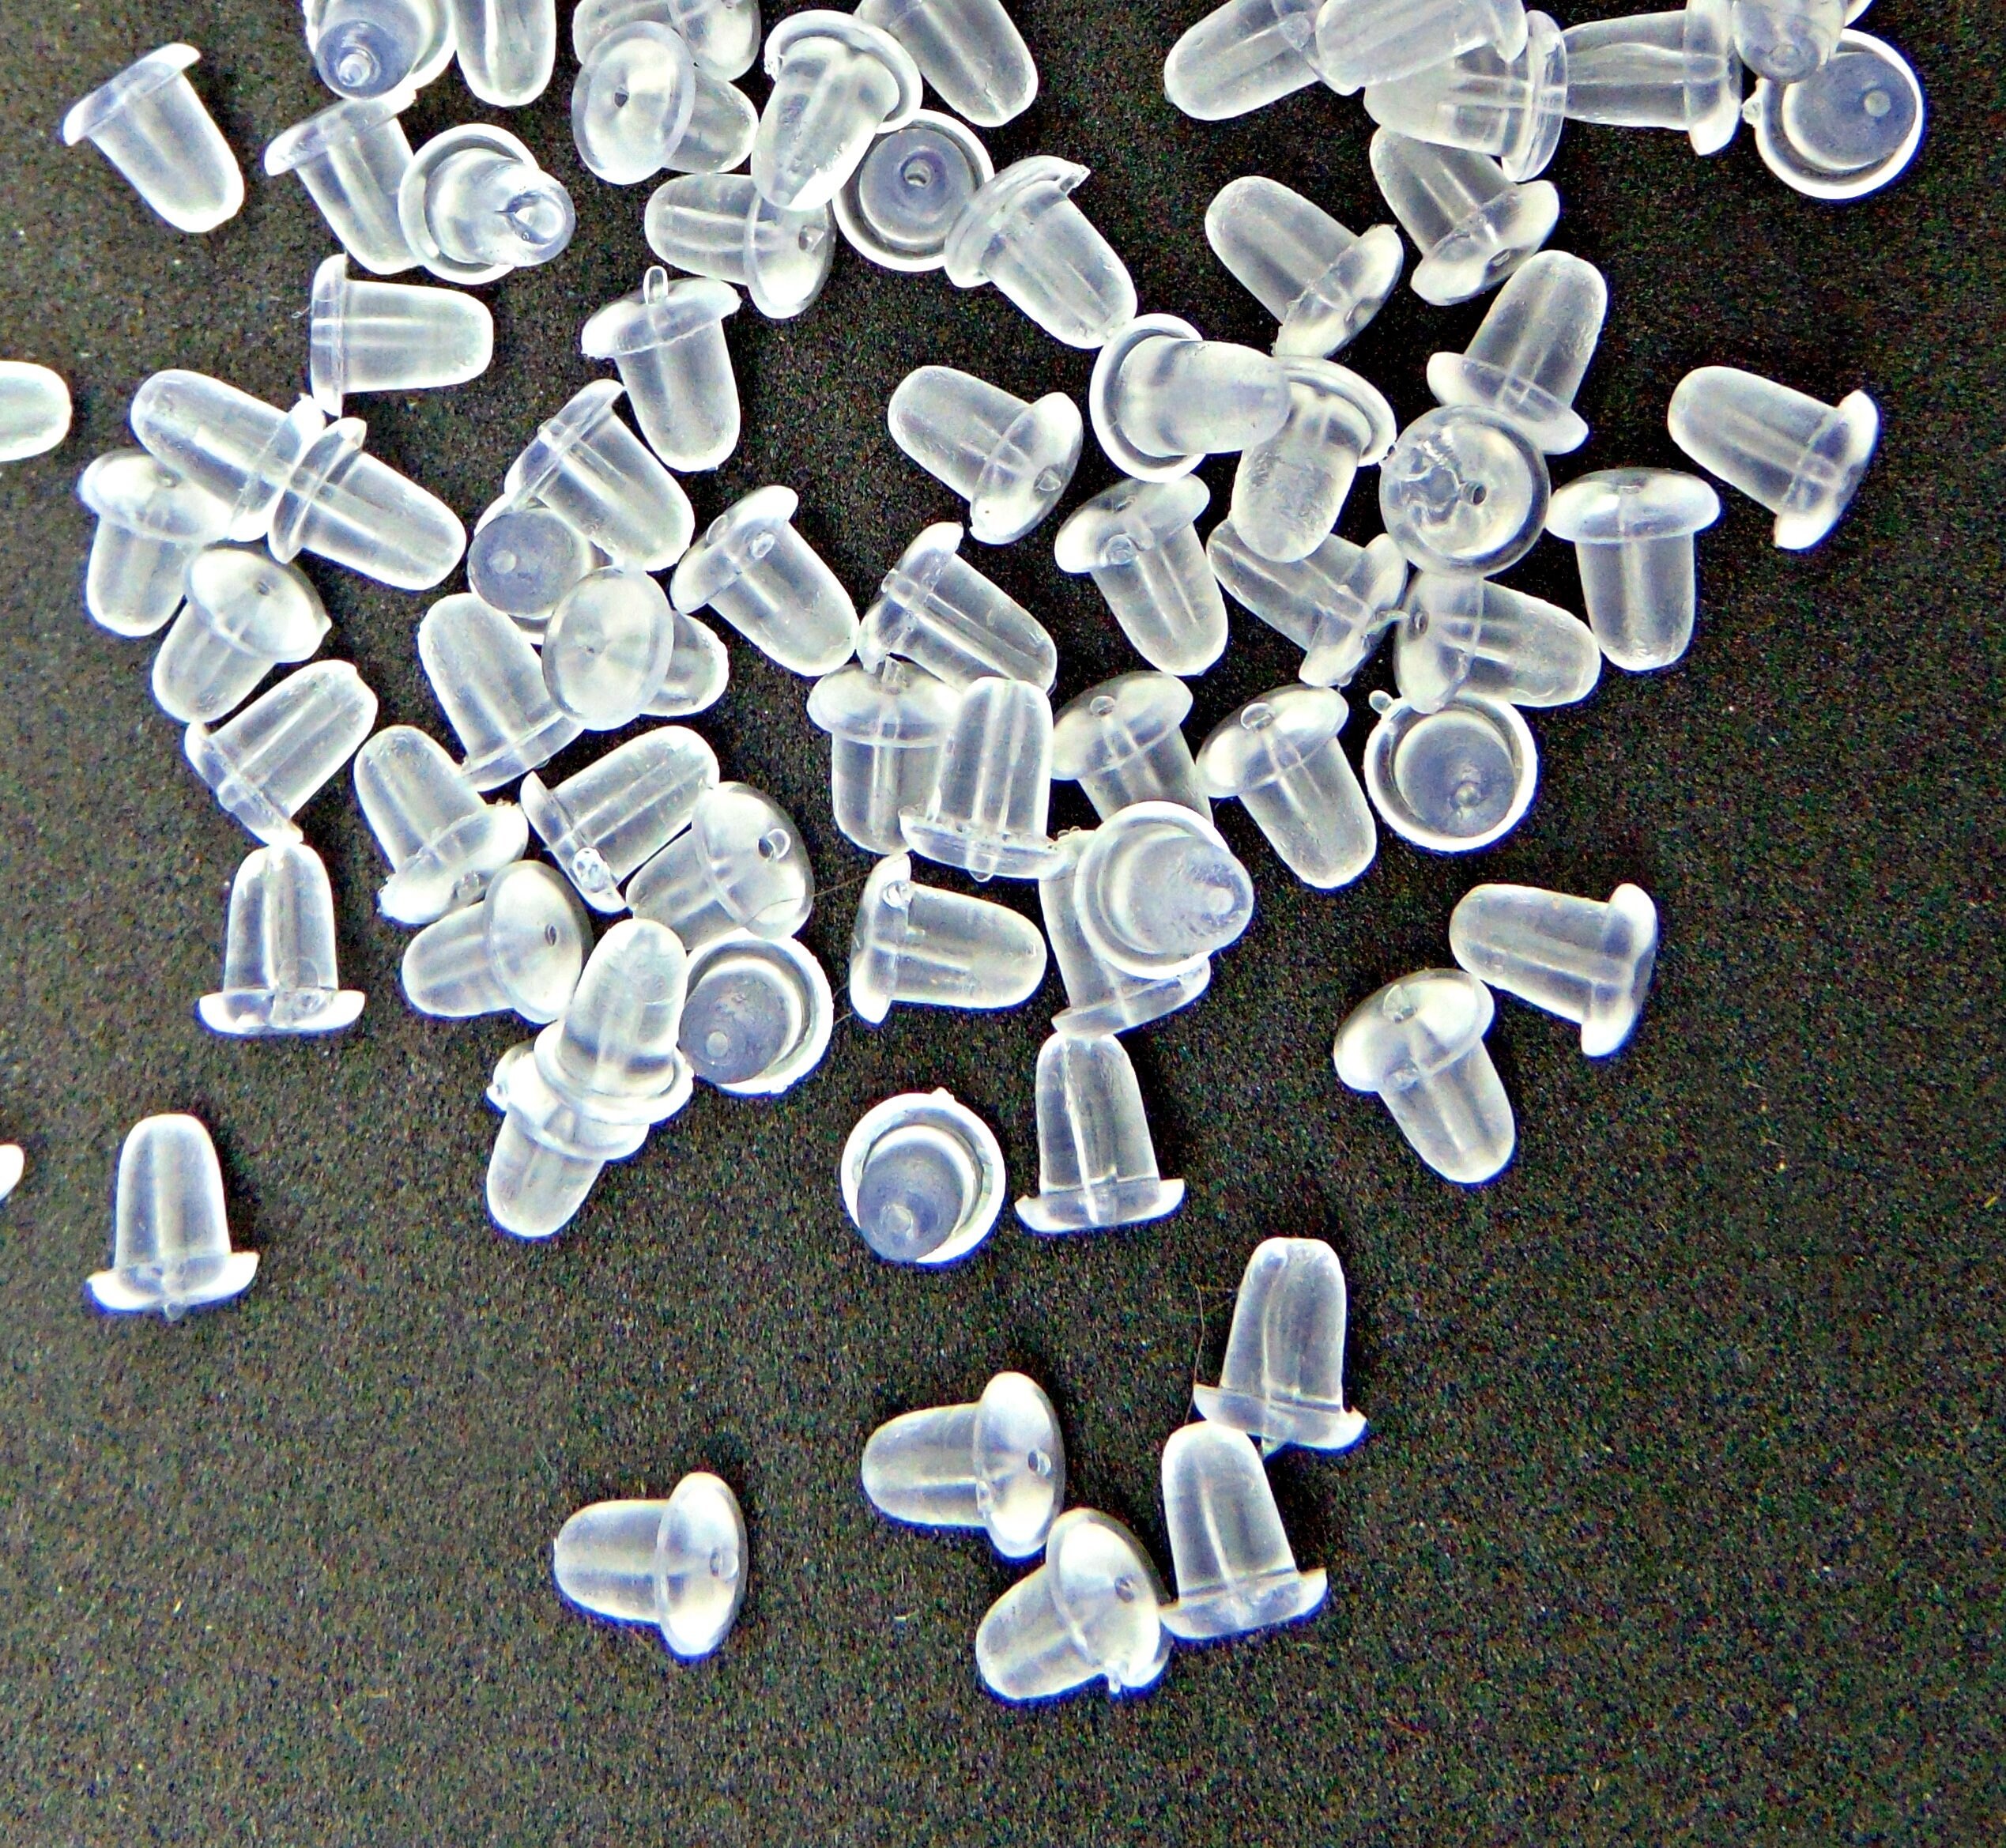 7mm x 5mm 100pcs Clear Rubber Plastic Disc Earring Backs Stopper Post Ear  Nuts